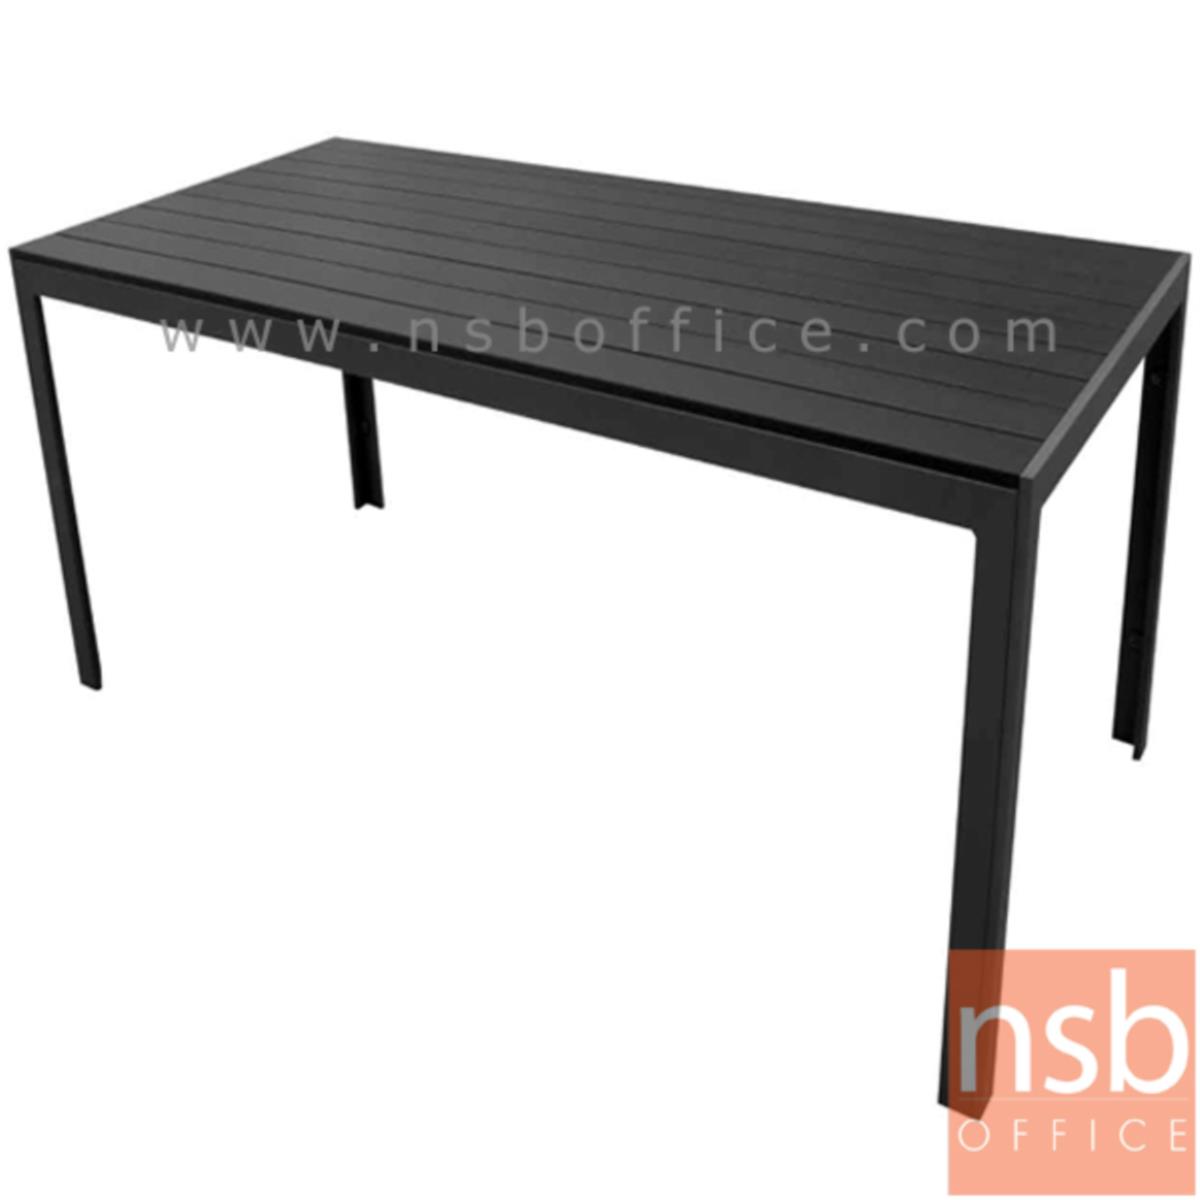 A14A062:โต๊ะเฟรมอลูมิเนียมหน้าไม้โพลี รุ่น Muffin (มัฟฟิน) ขนาด 160W cm.  โครงขาสีดำเกร็ดเงิน 